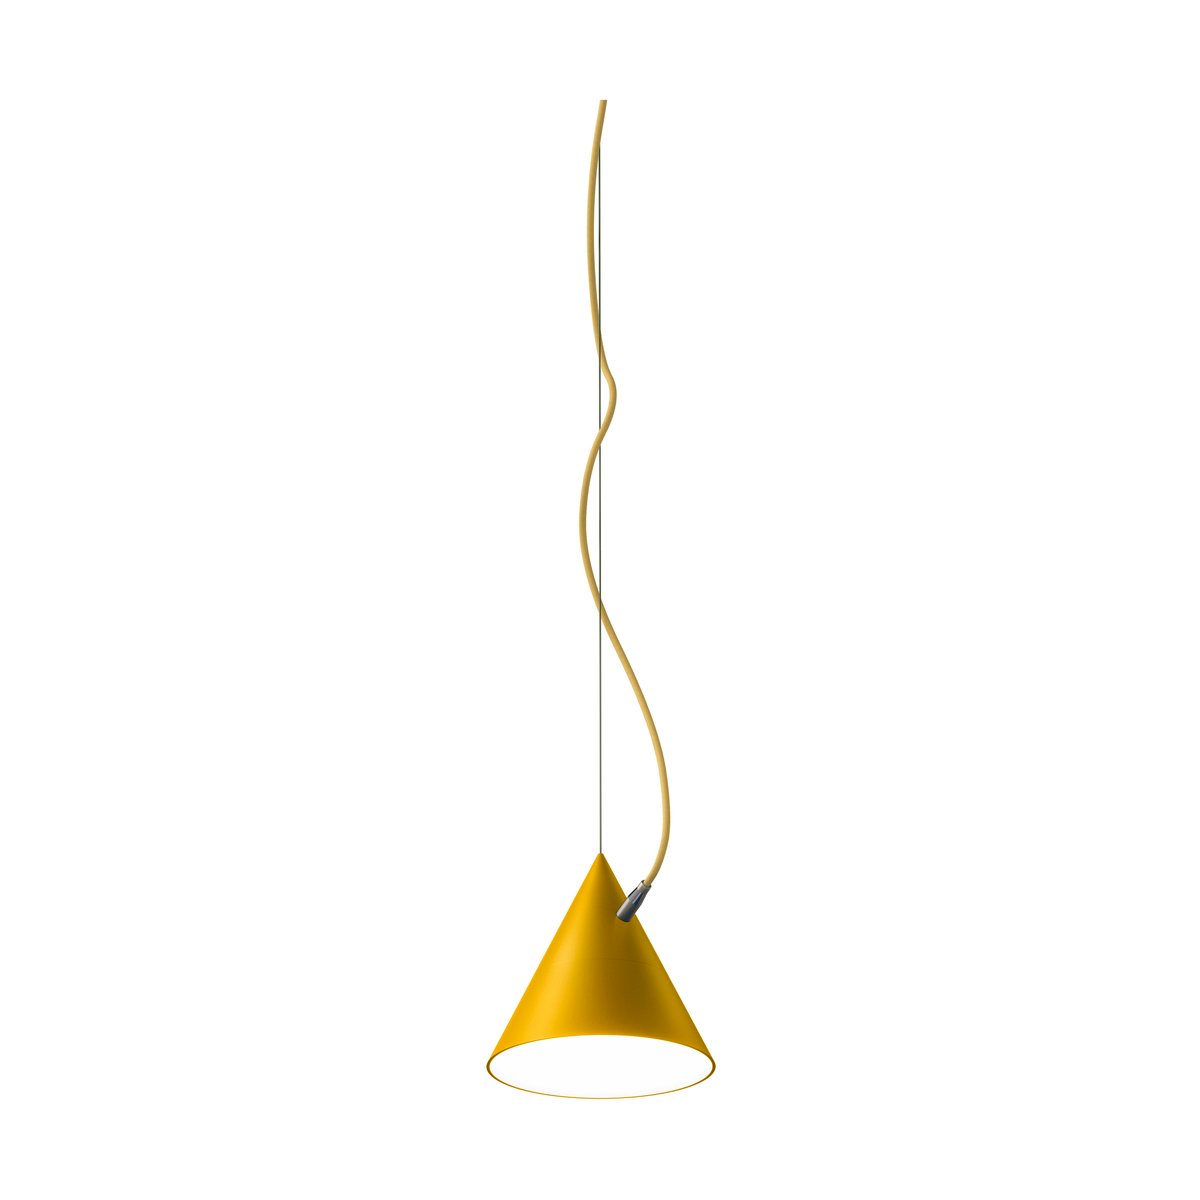 Noon Castor hanglamp 20 cm Goudgeel-zwavelgeel-messing